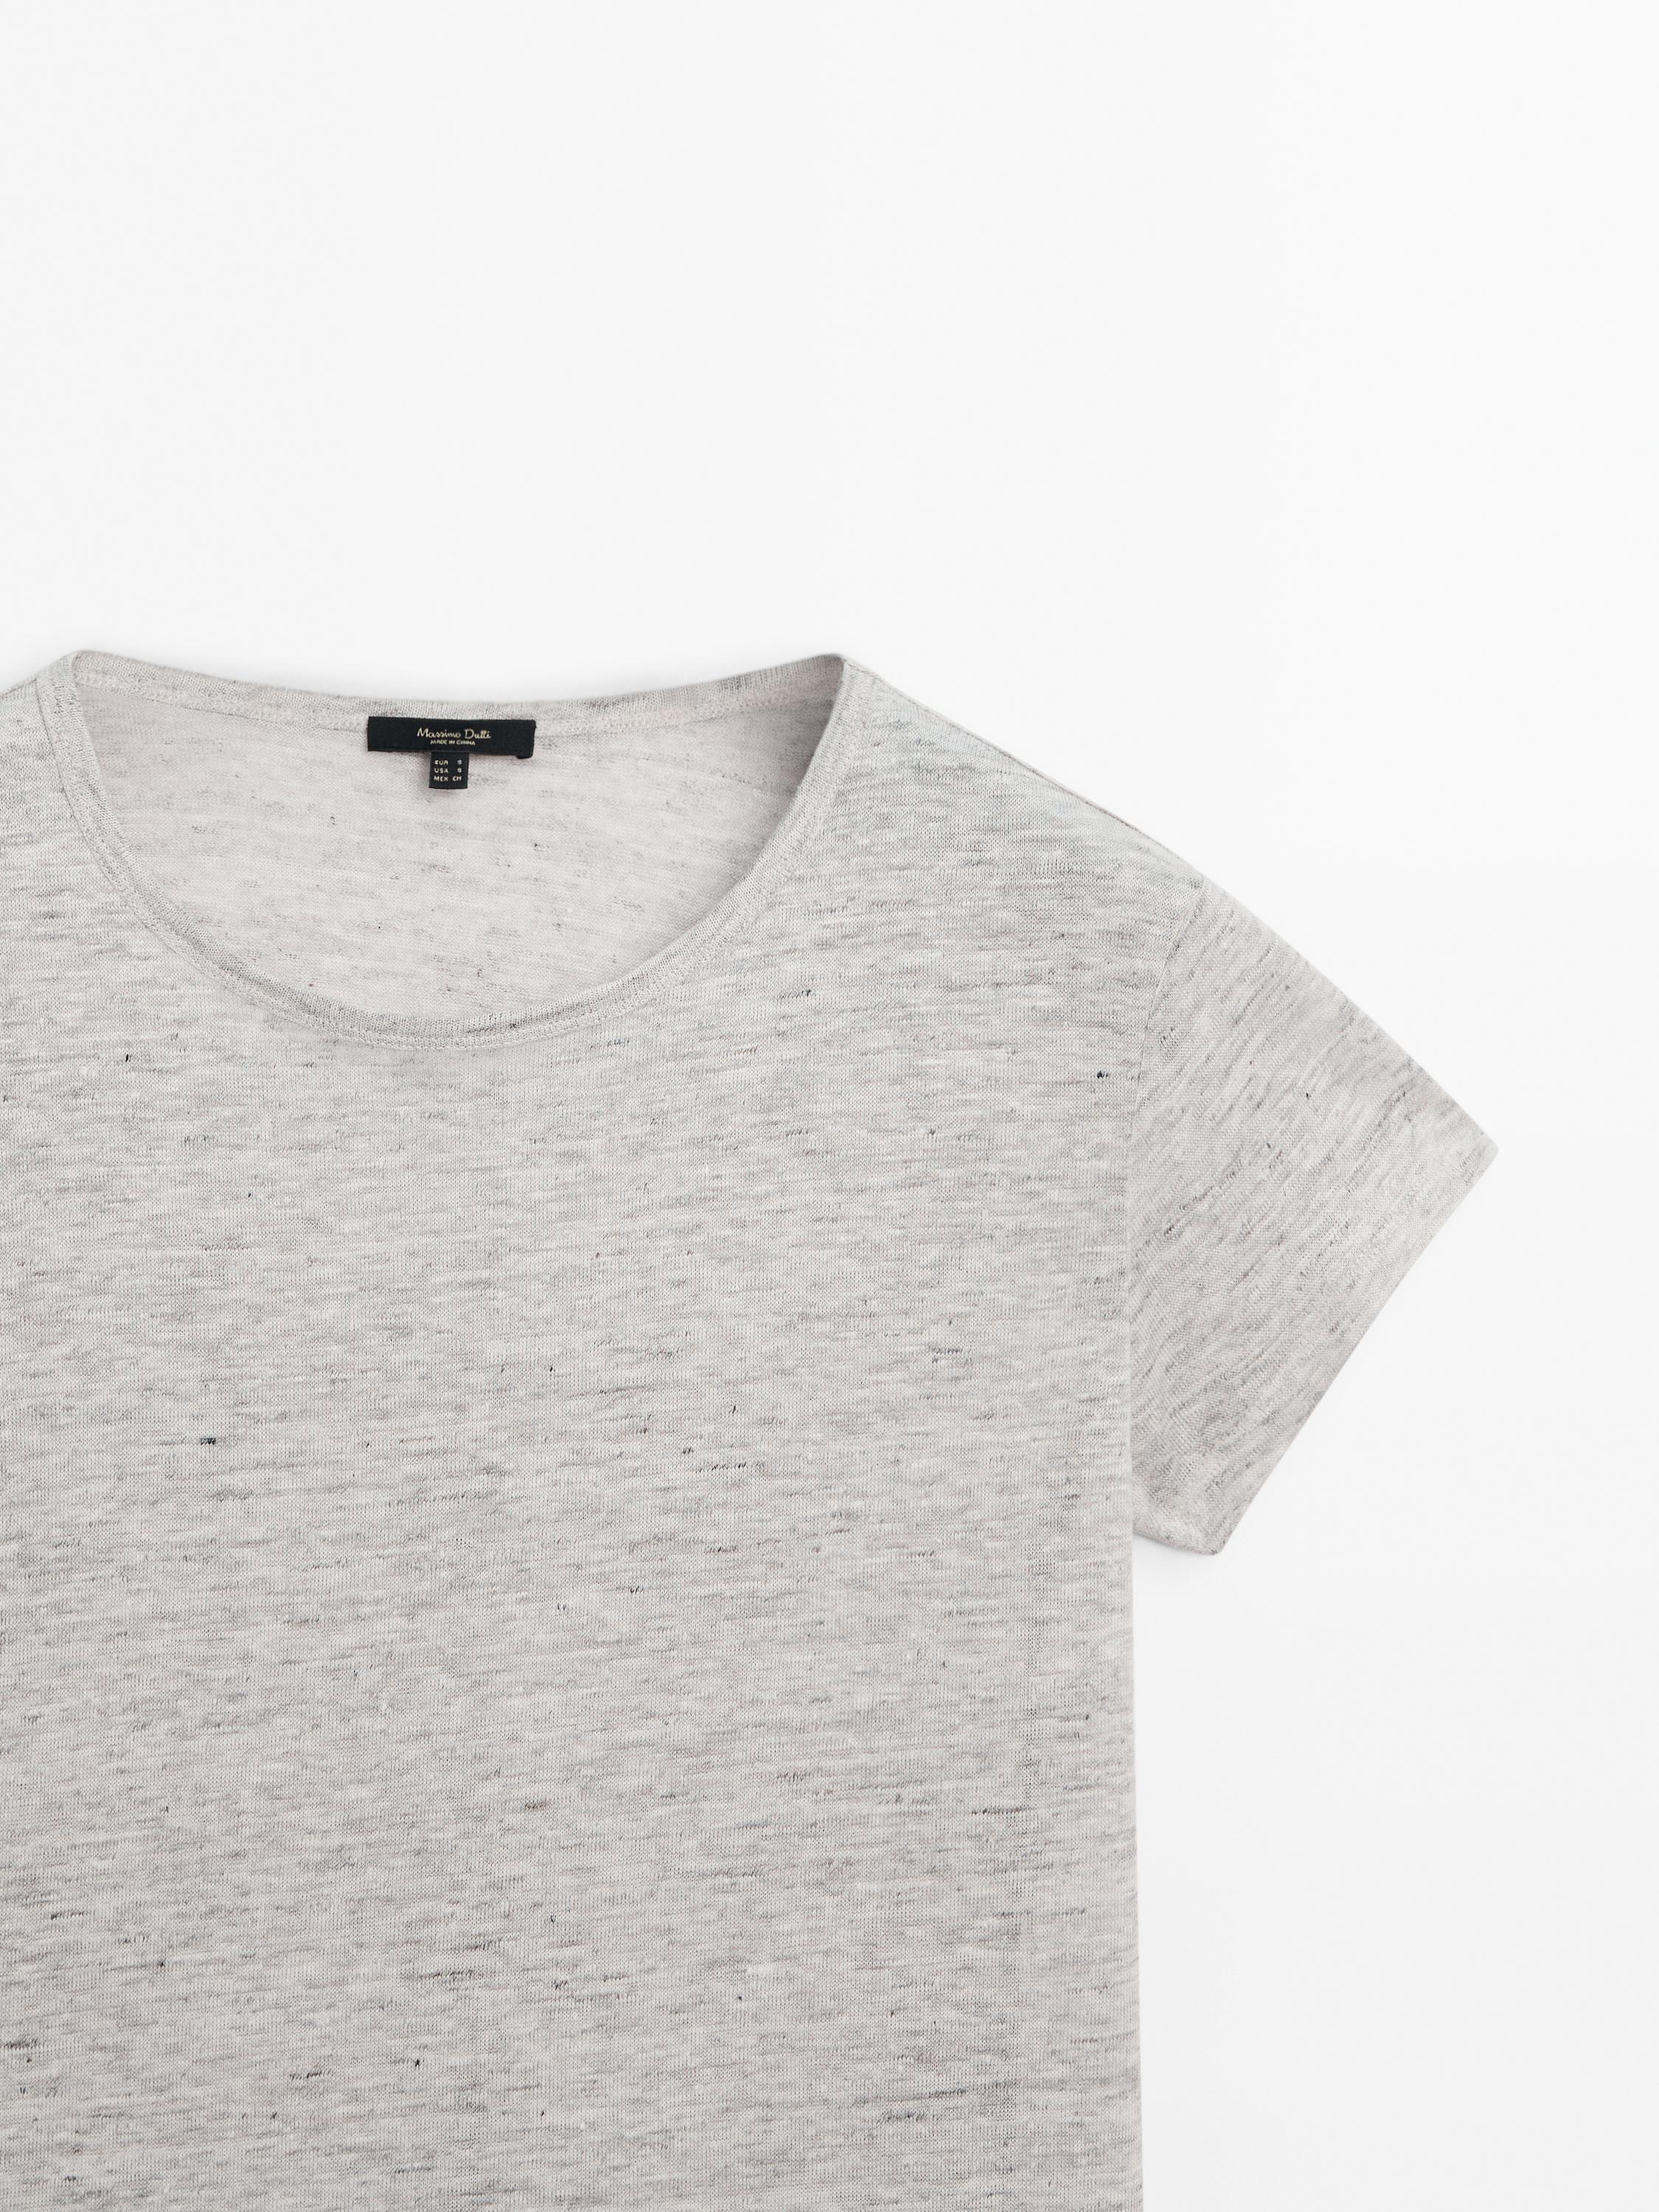 100% linen short sleeve T-shirt